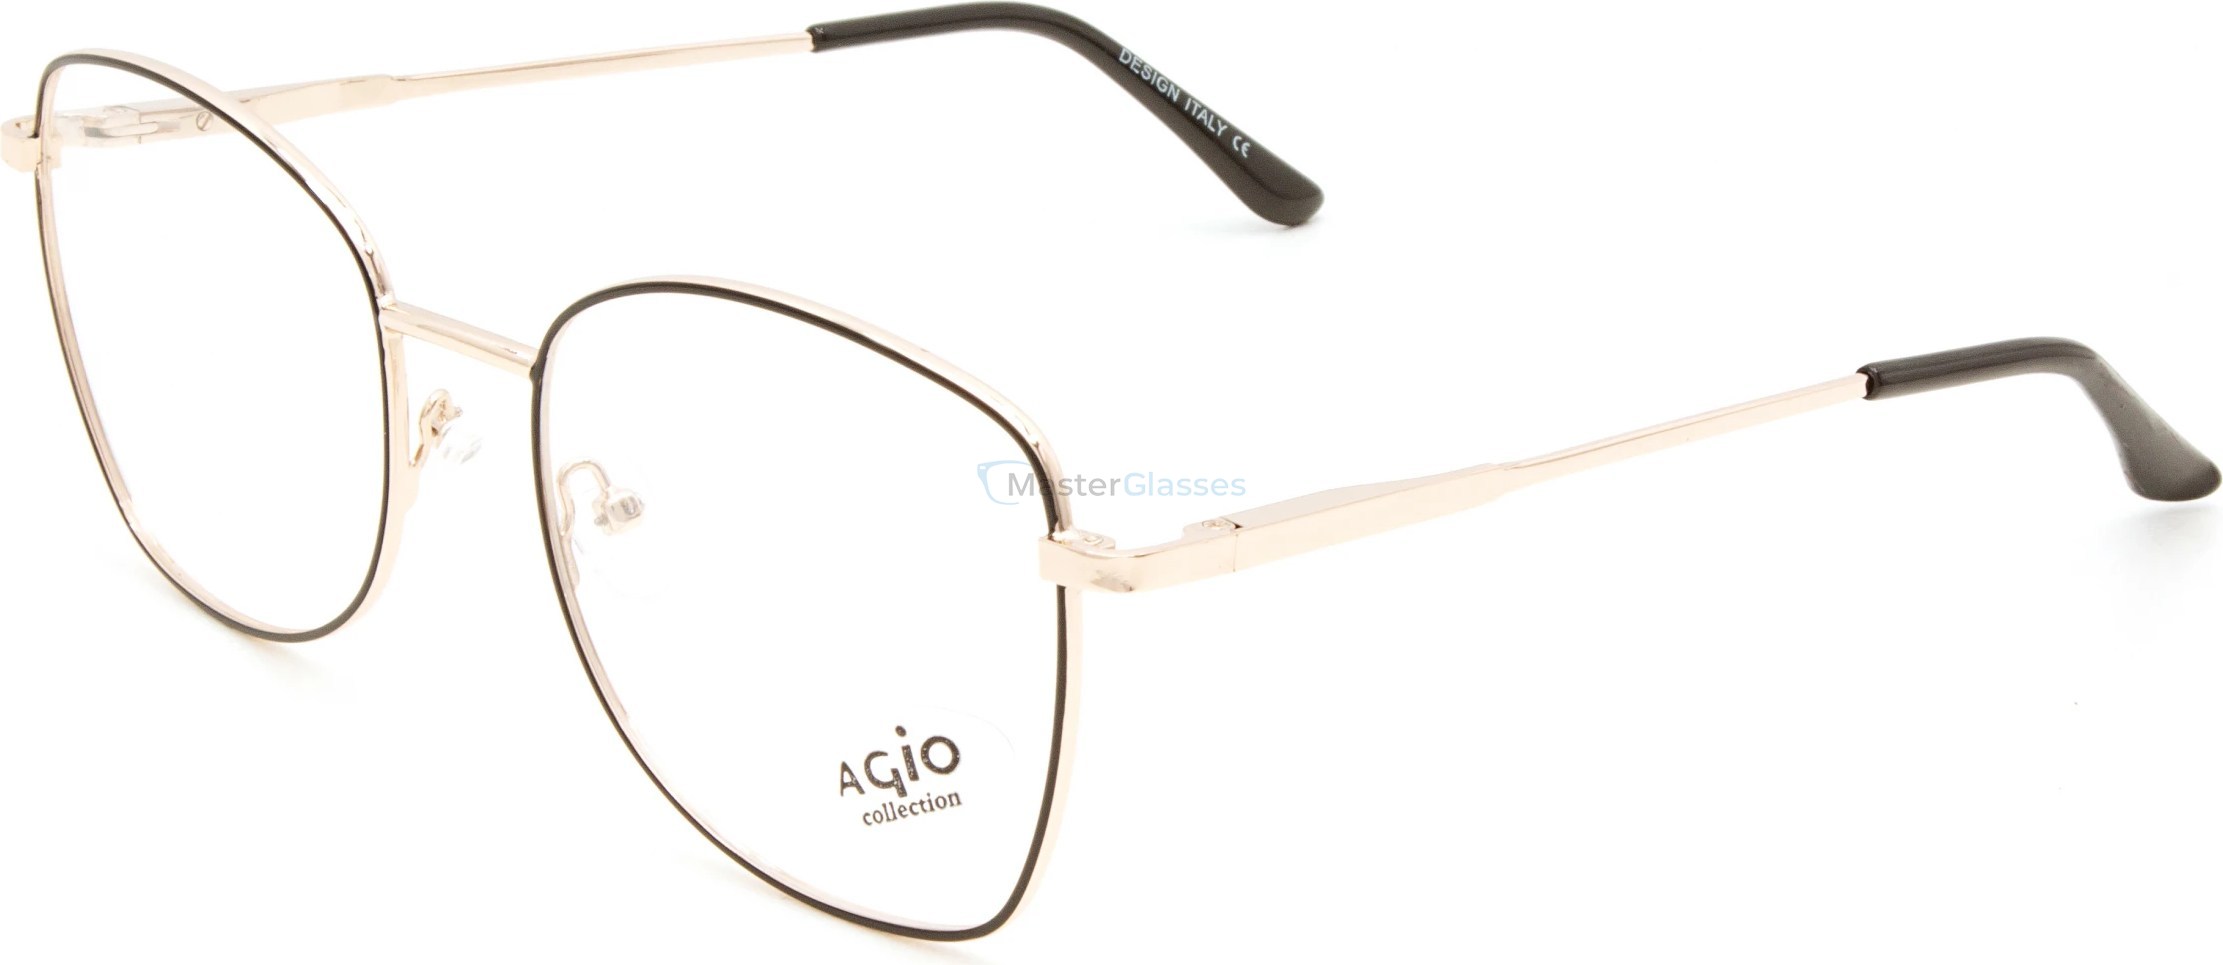  AGIO AG 70193 c2